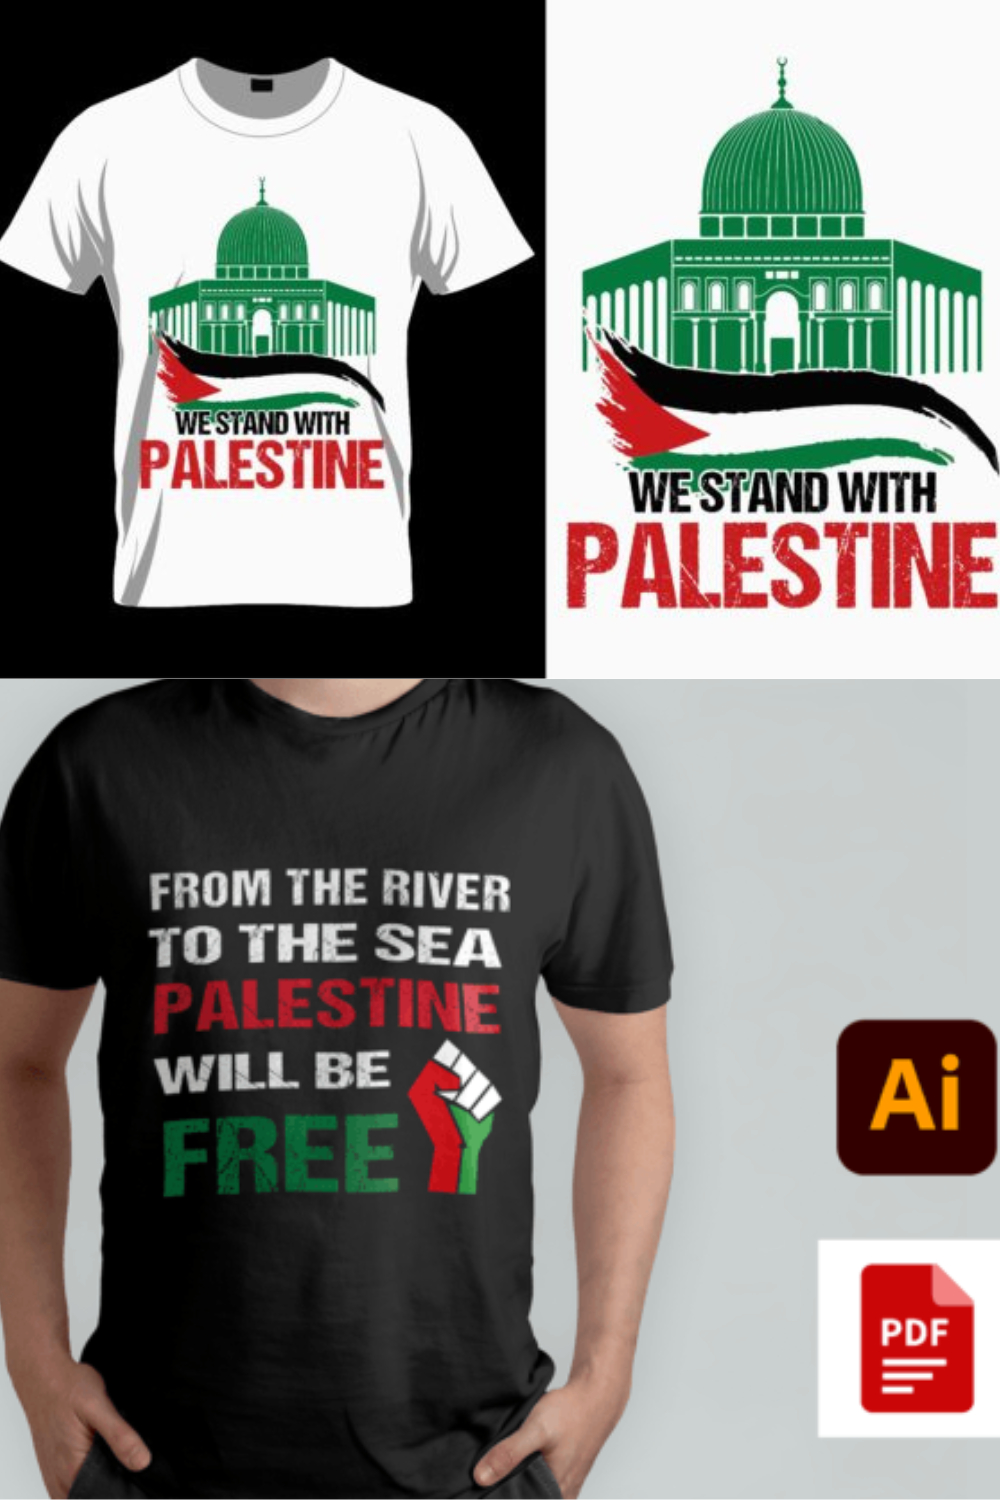 Free Gaza Free Palestine T-shirt bundle pinterest preview image.